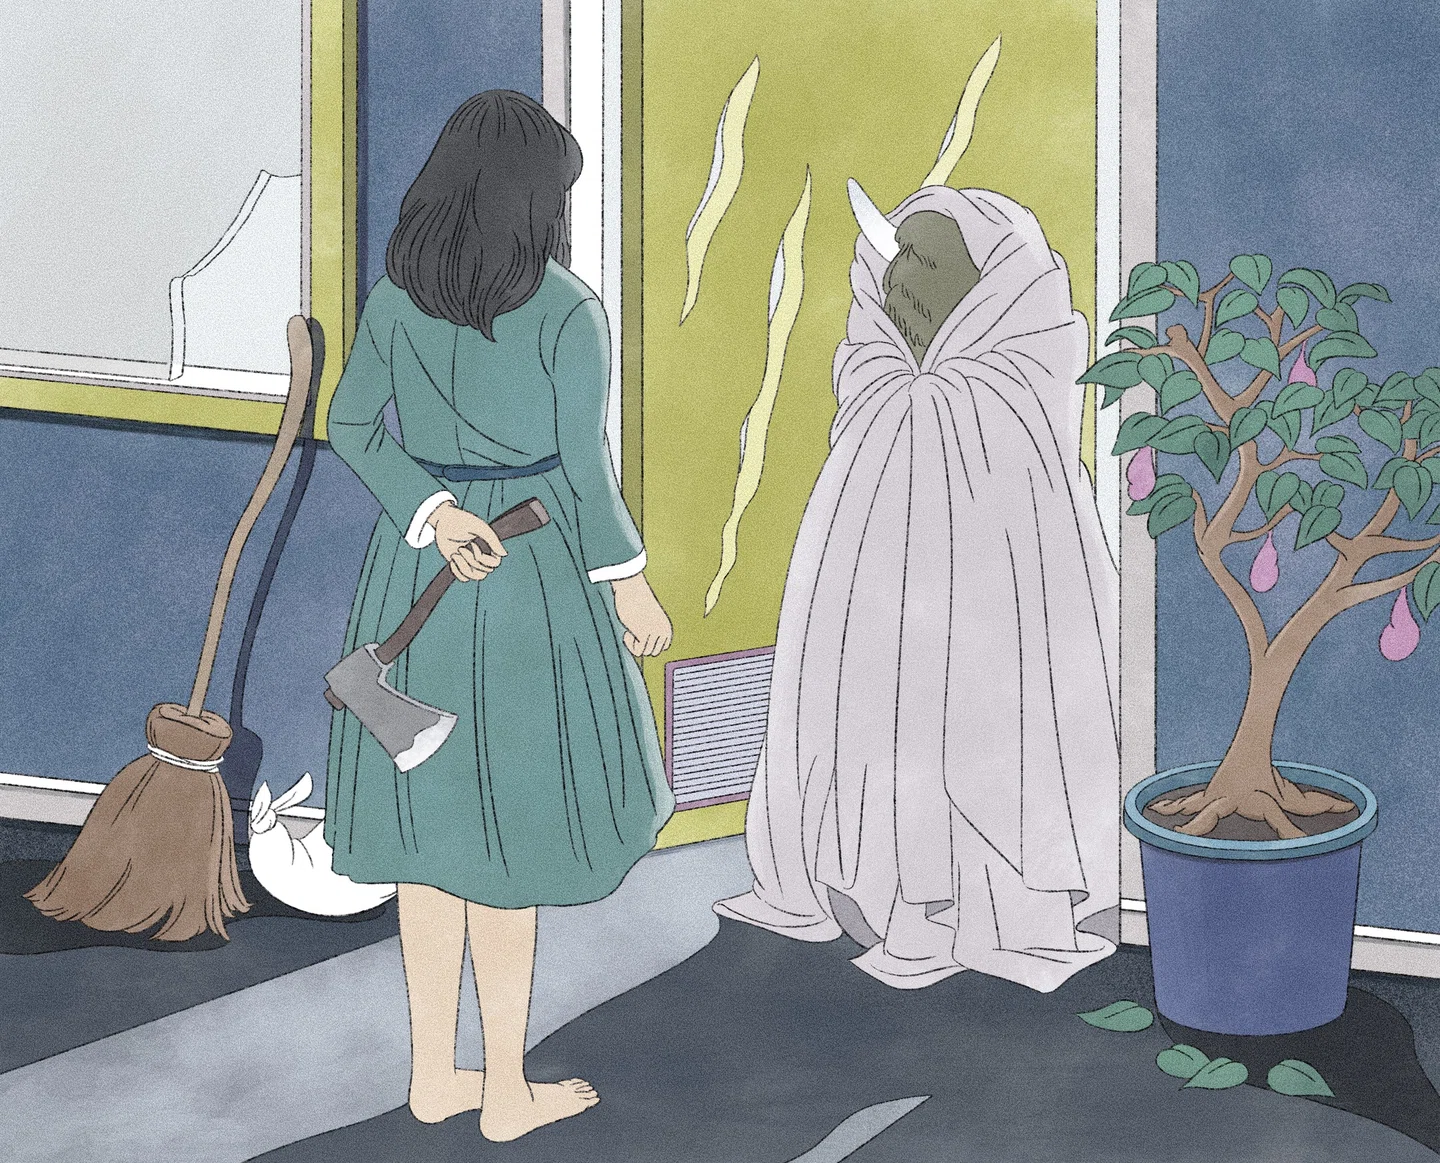 “Único, estranho e esquisito”, as ilustrações de Takaya Katsuragawa estão repletas de momentos inesperados